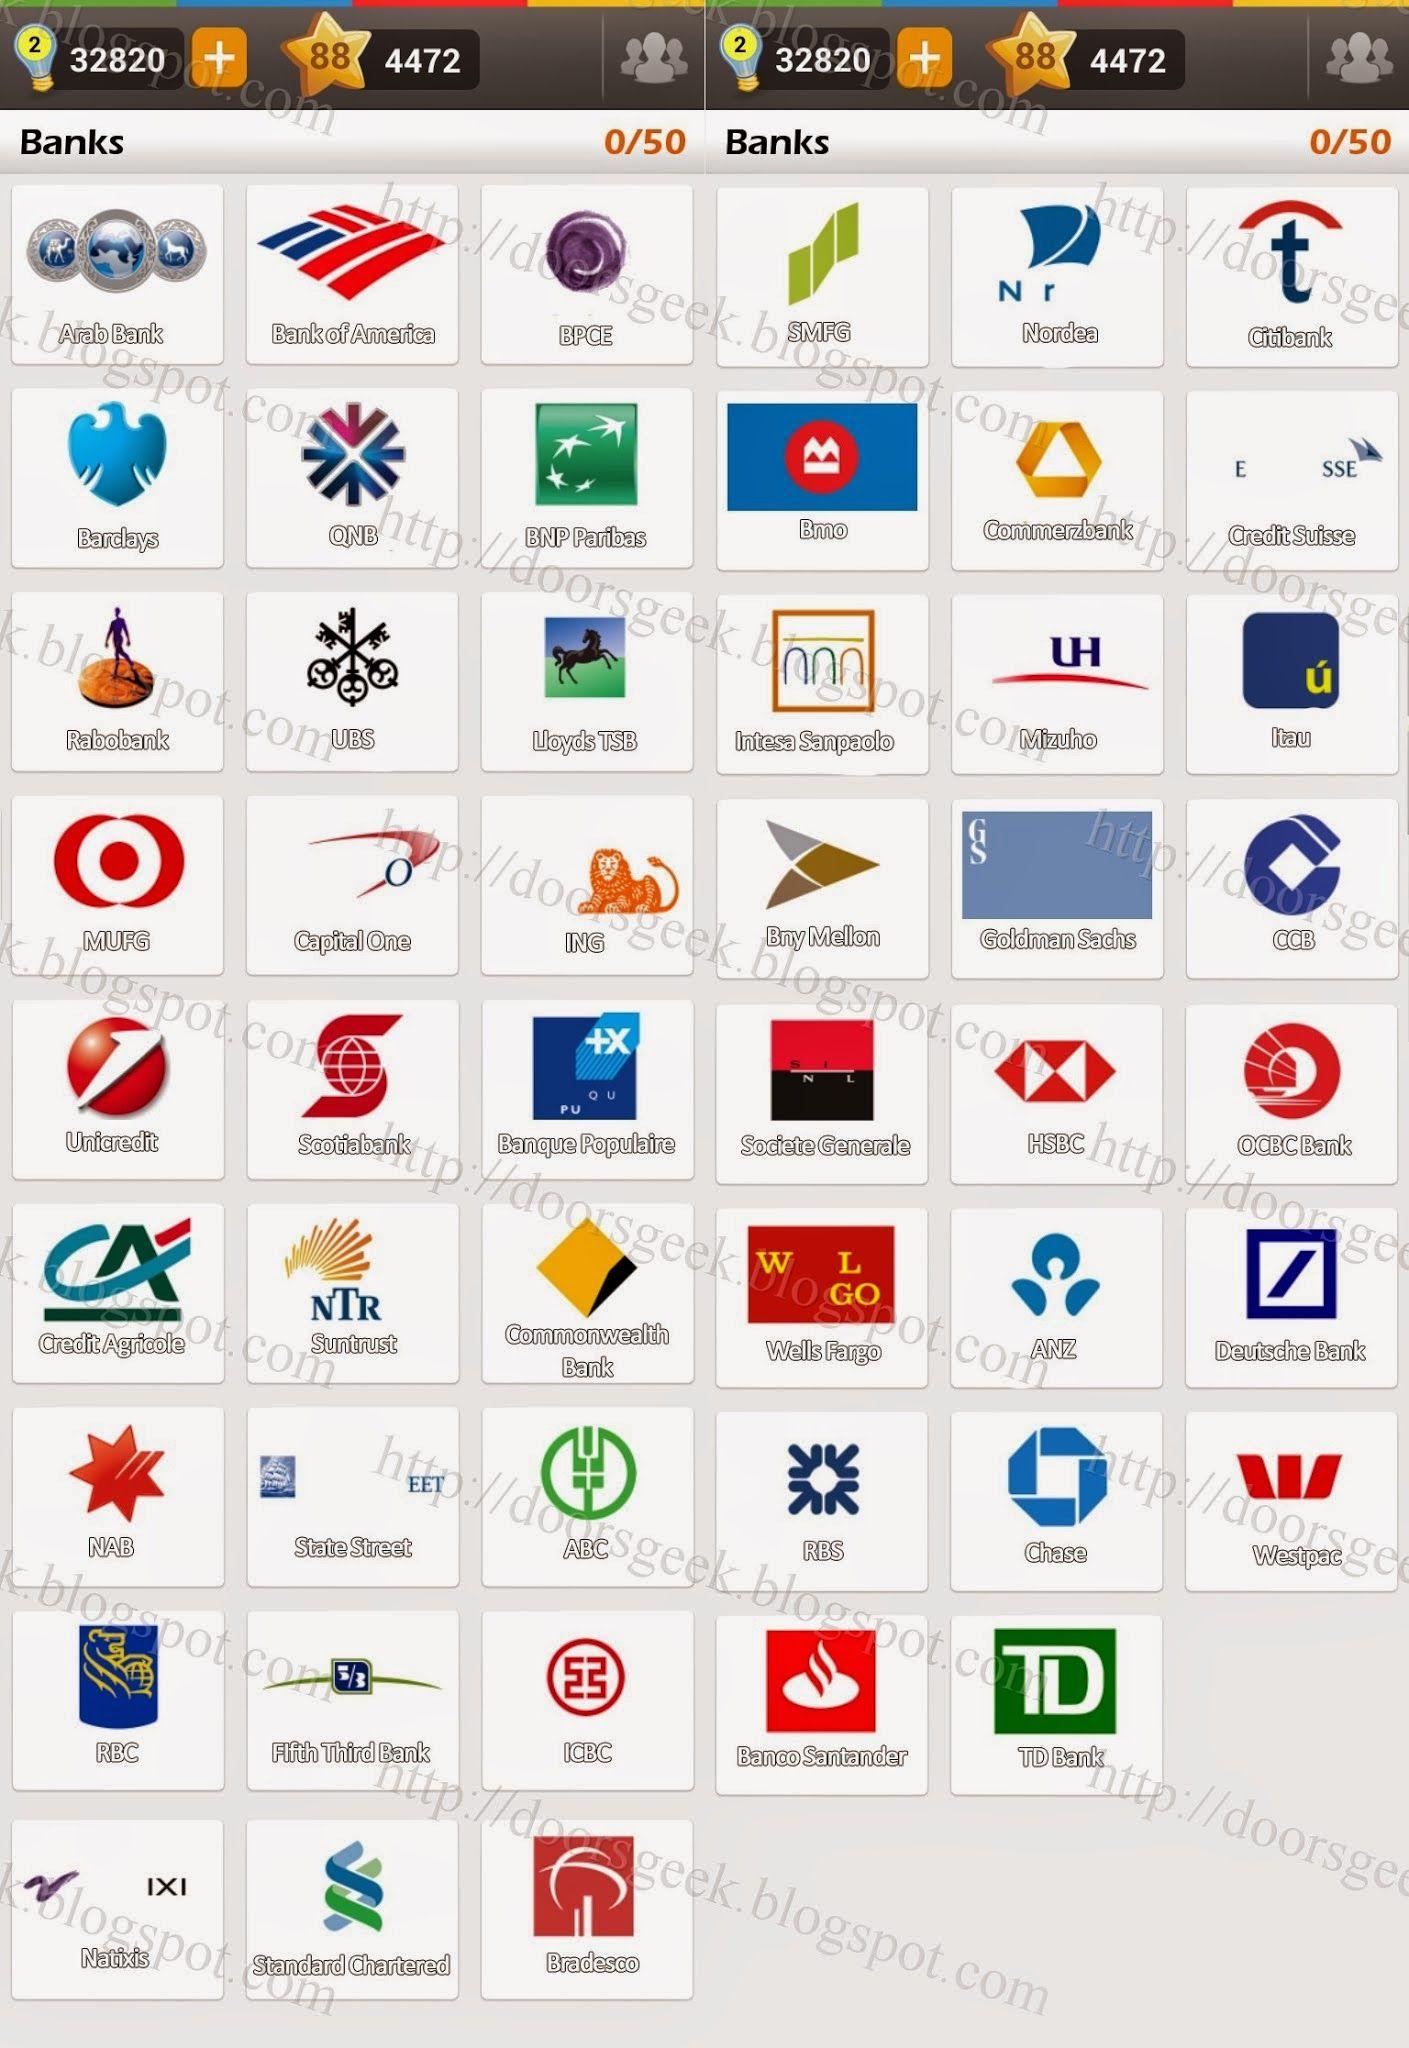 Bank Brand Logo - Logo Game: Guess the Brand [Bonus] Banks ~ Doors Geek